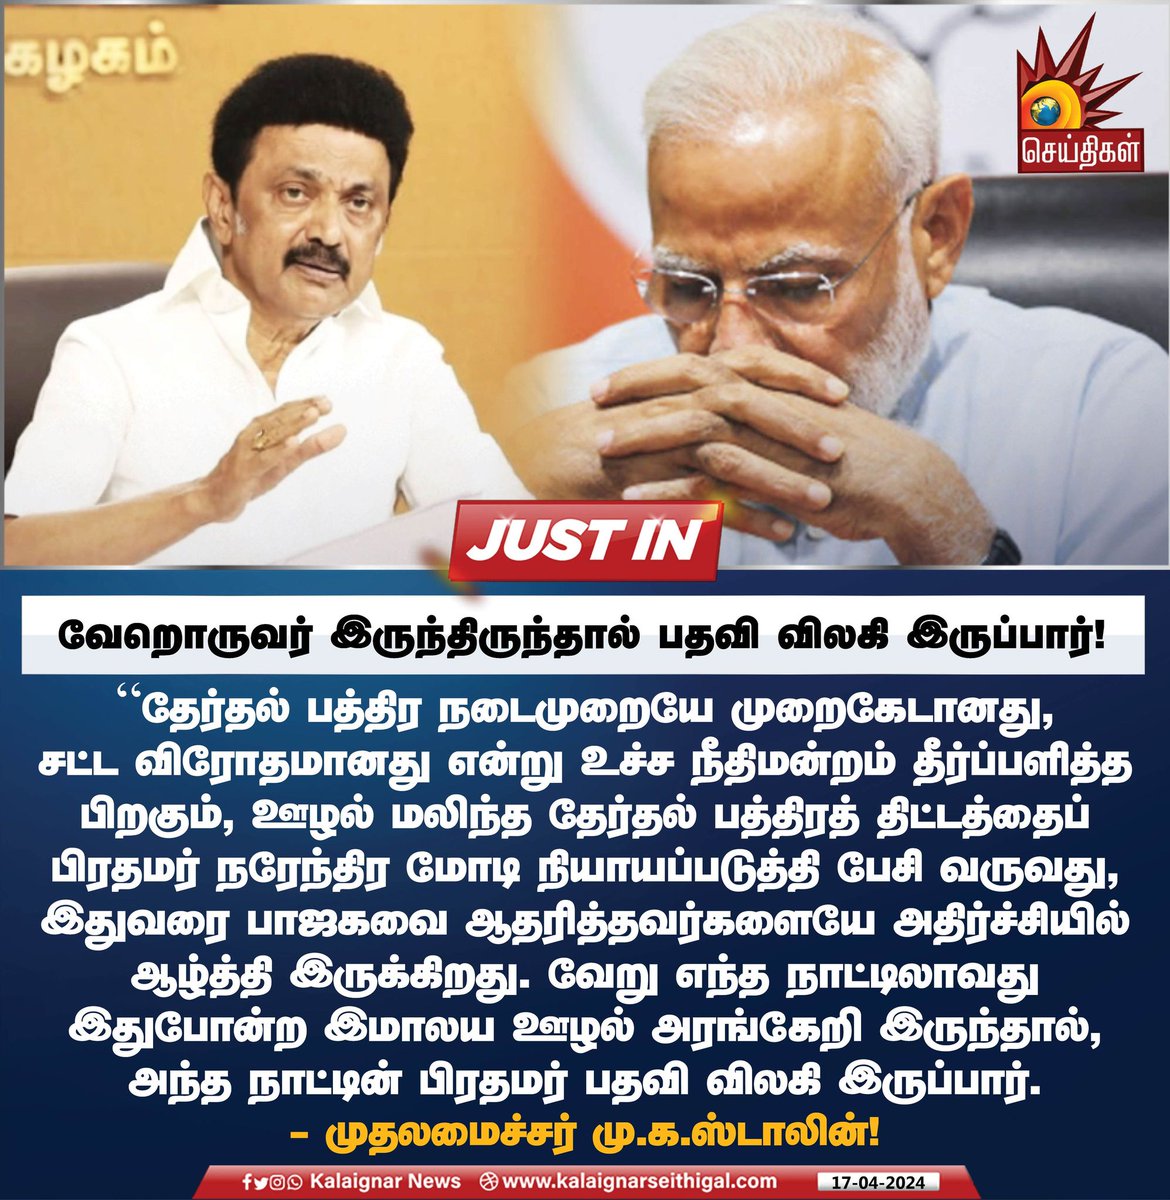 வேறொருவர் இருந்திருந்தால் பதவி விலகி இருப்பார் !

#BJPFailedIndia #CMMKStalin #MKStalinGovt #TamilNadu #INDIAAlliance #Modi #ElectrolBondScam #KalaignarSeithigal